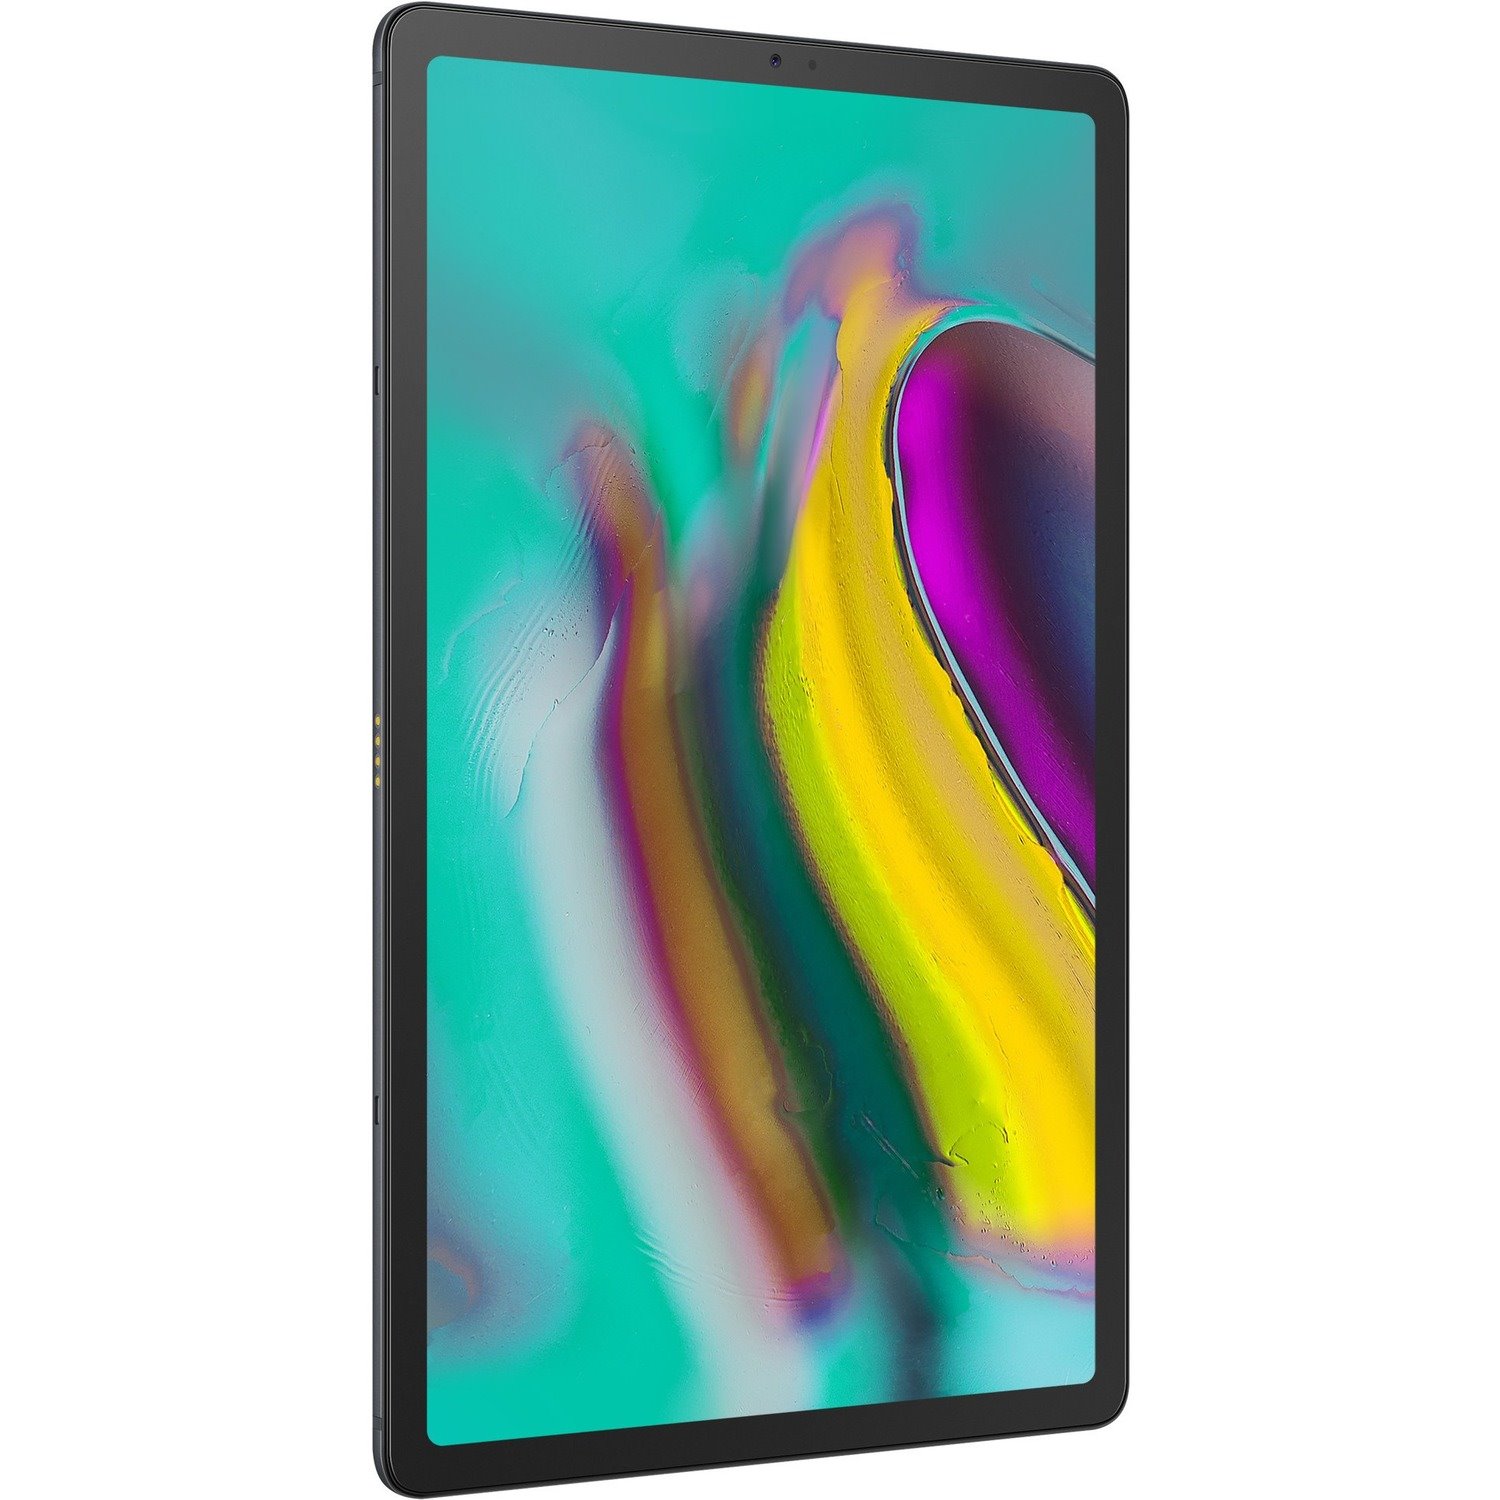 Samsung Galaxy Tab S5e SM-T720 Tablet - 10.5" - Qualcomm Snapdragon 670 - 4 GB - 128 GB Storage - Android 9.0 Pie - Black